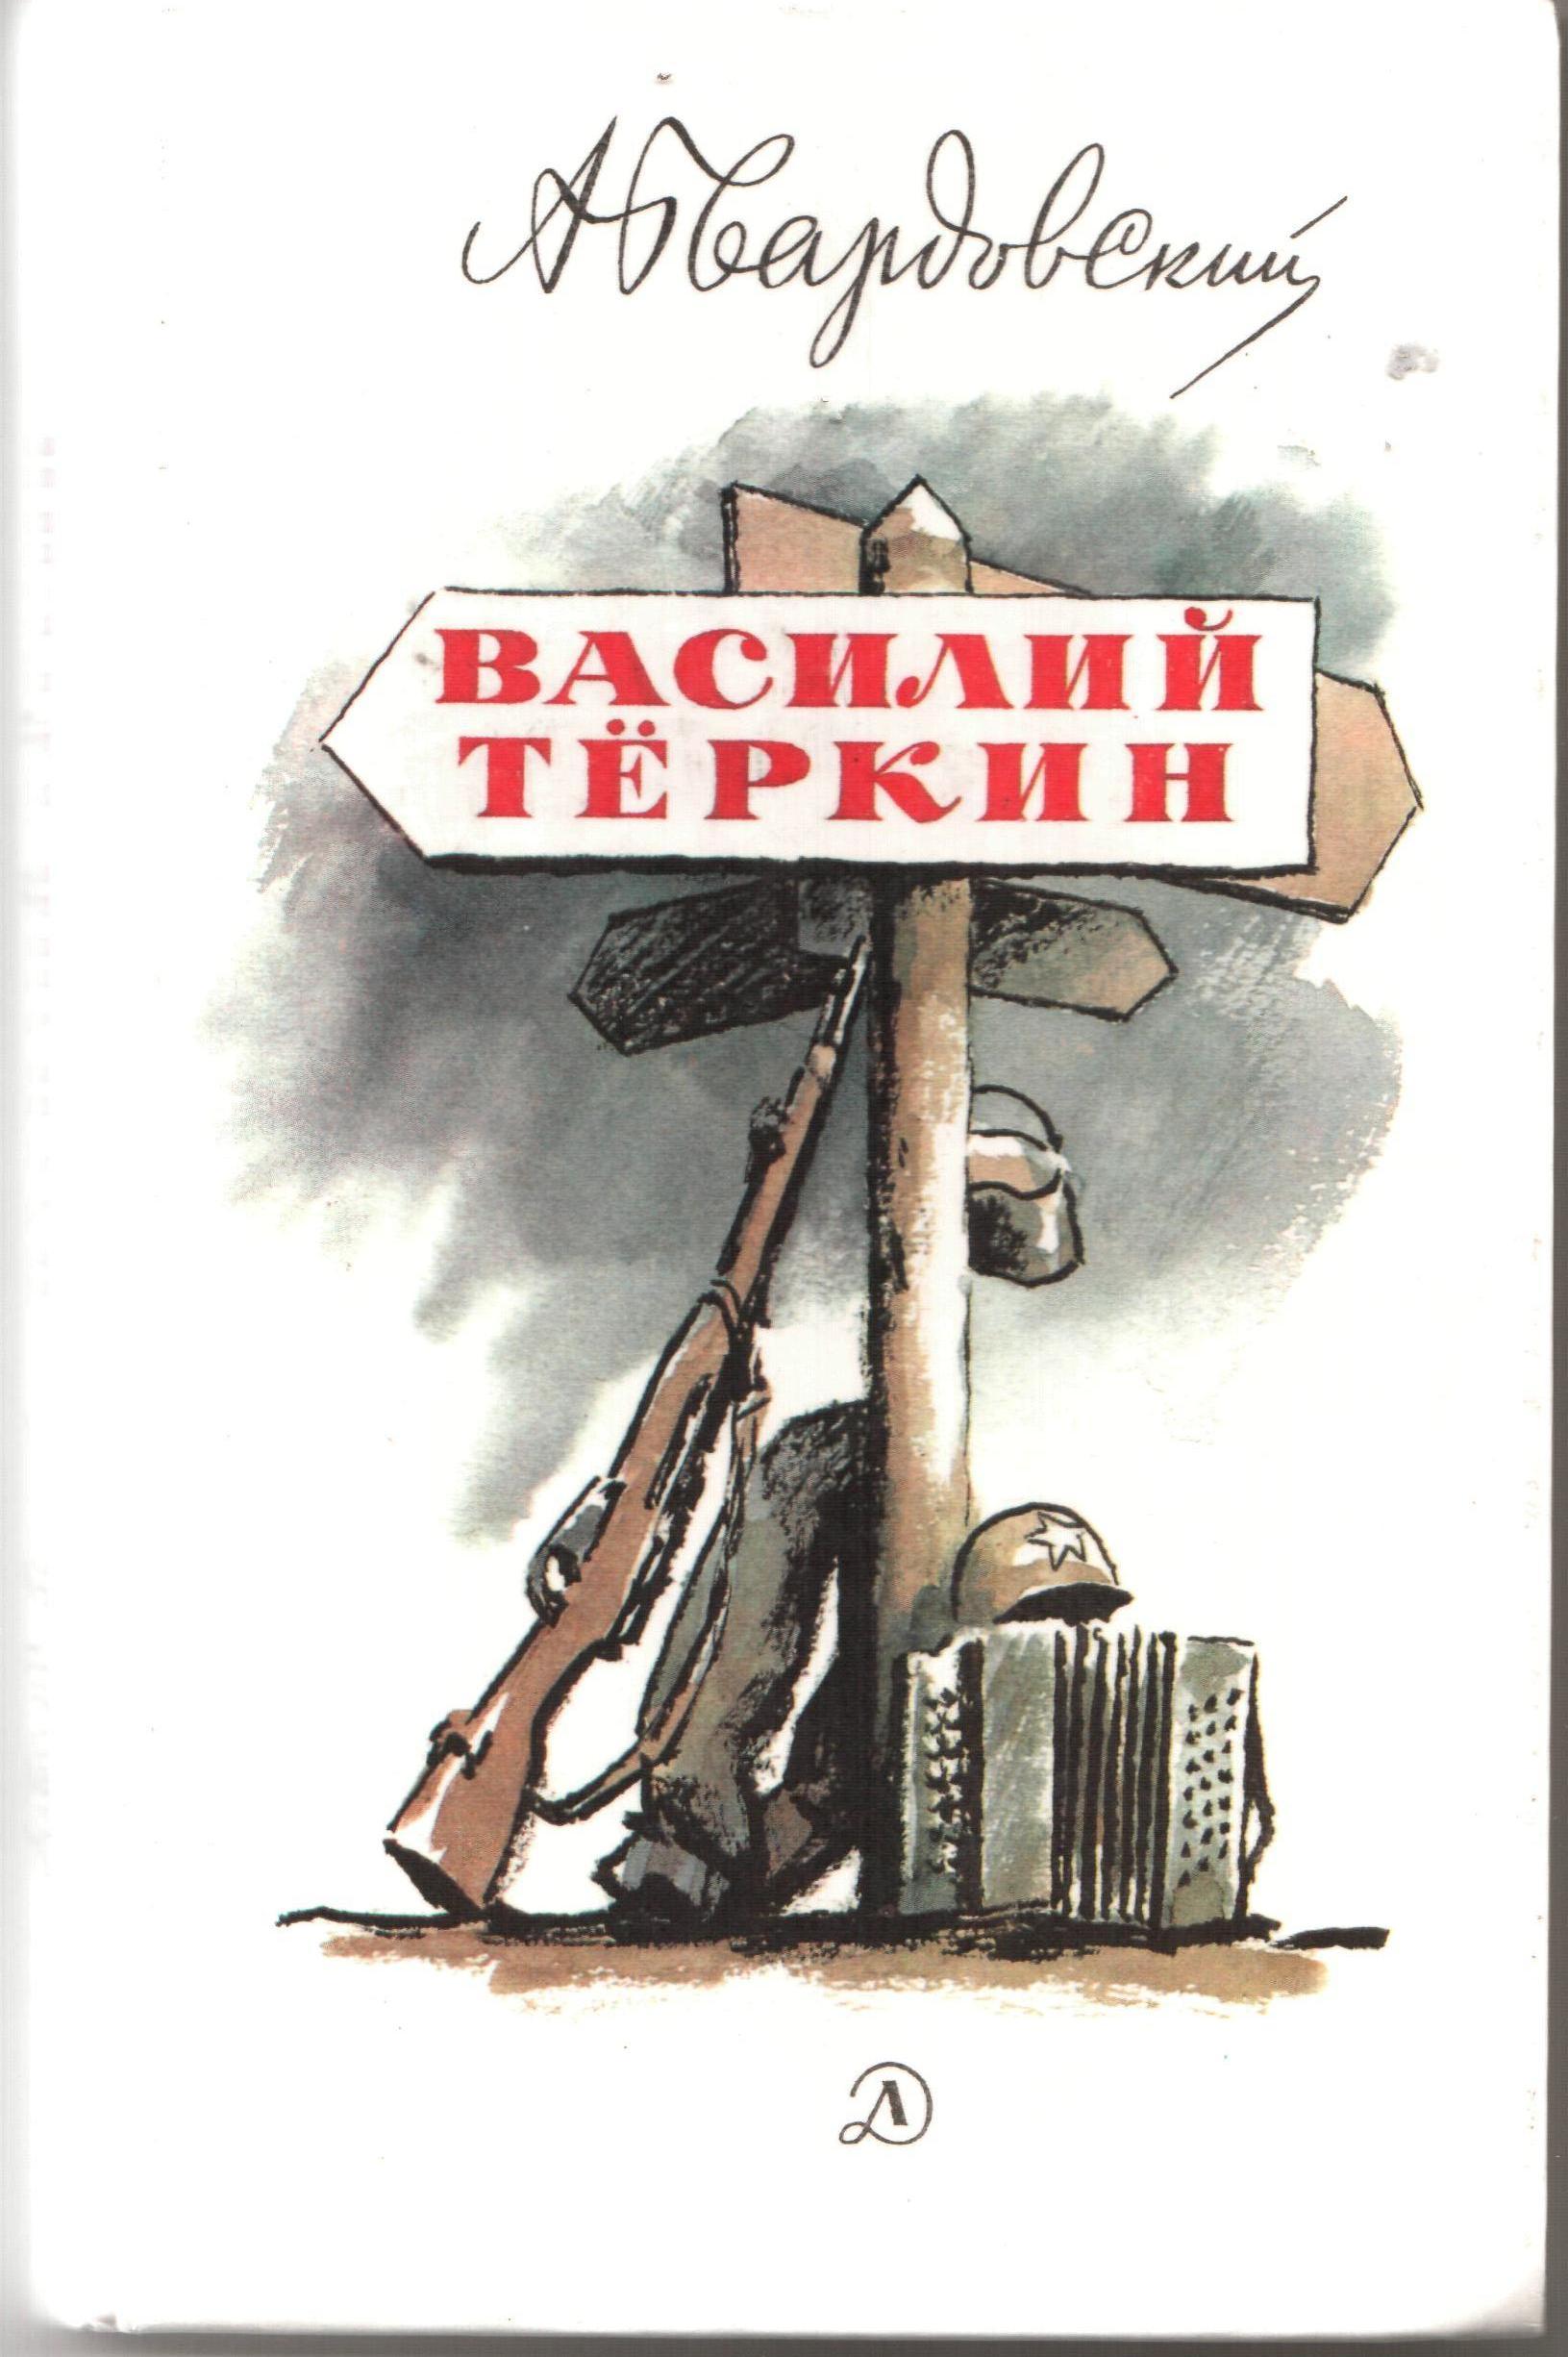 Твардовский Василий Теркин обложка